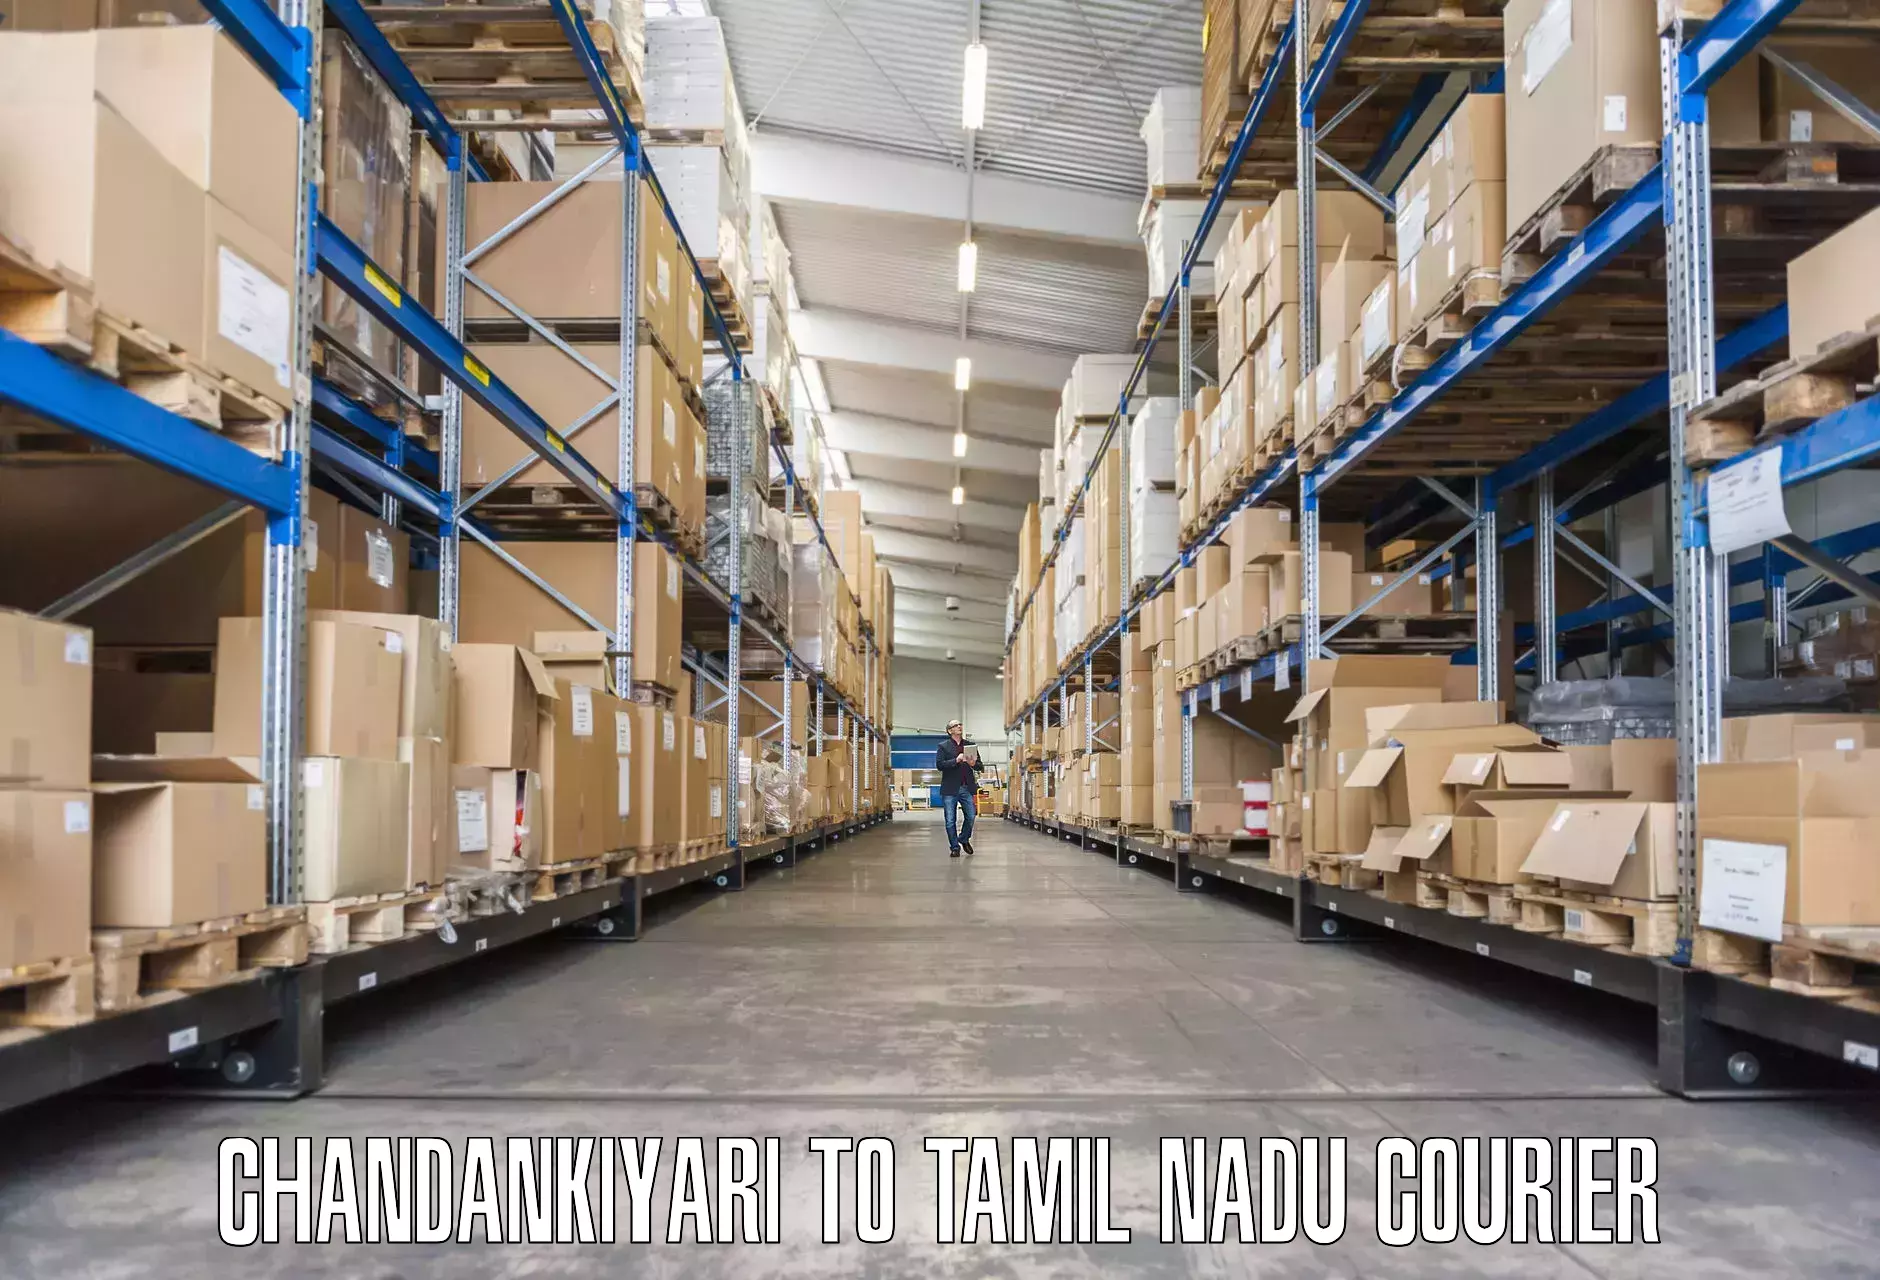 Professional furniture relocation Chandankiyari to Erode